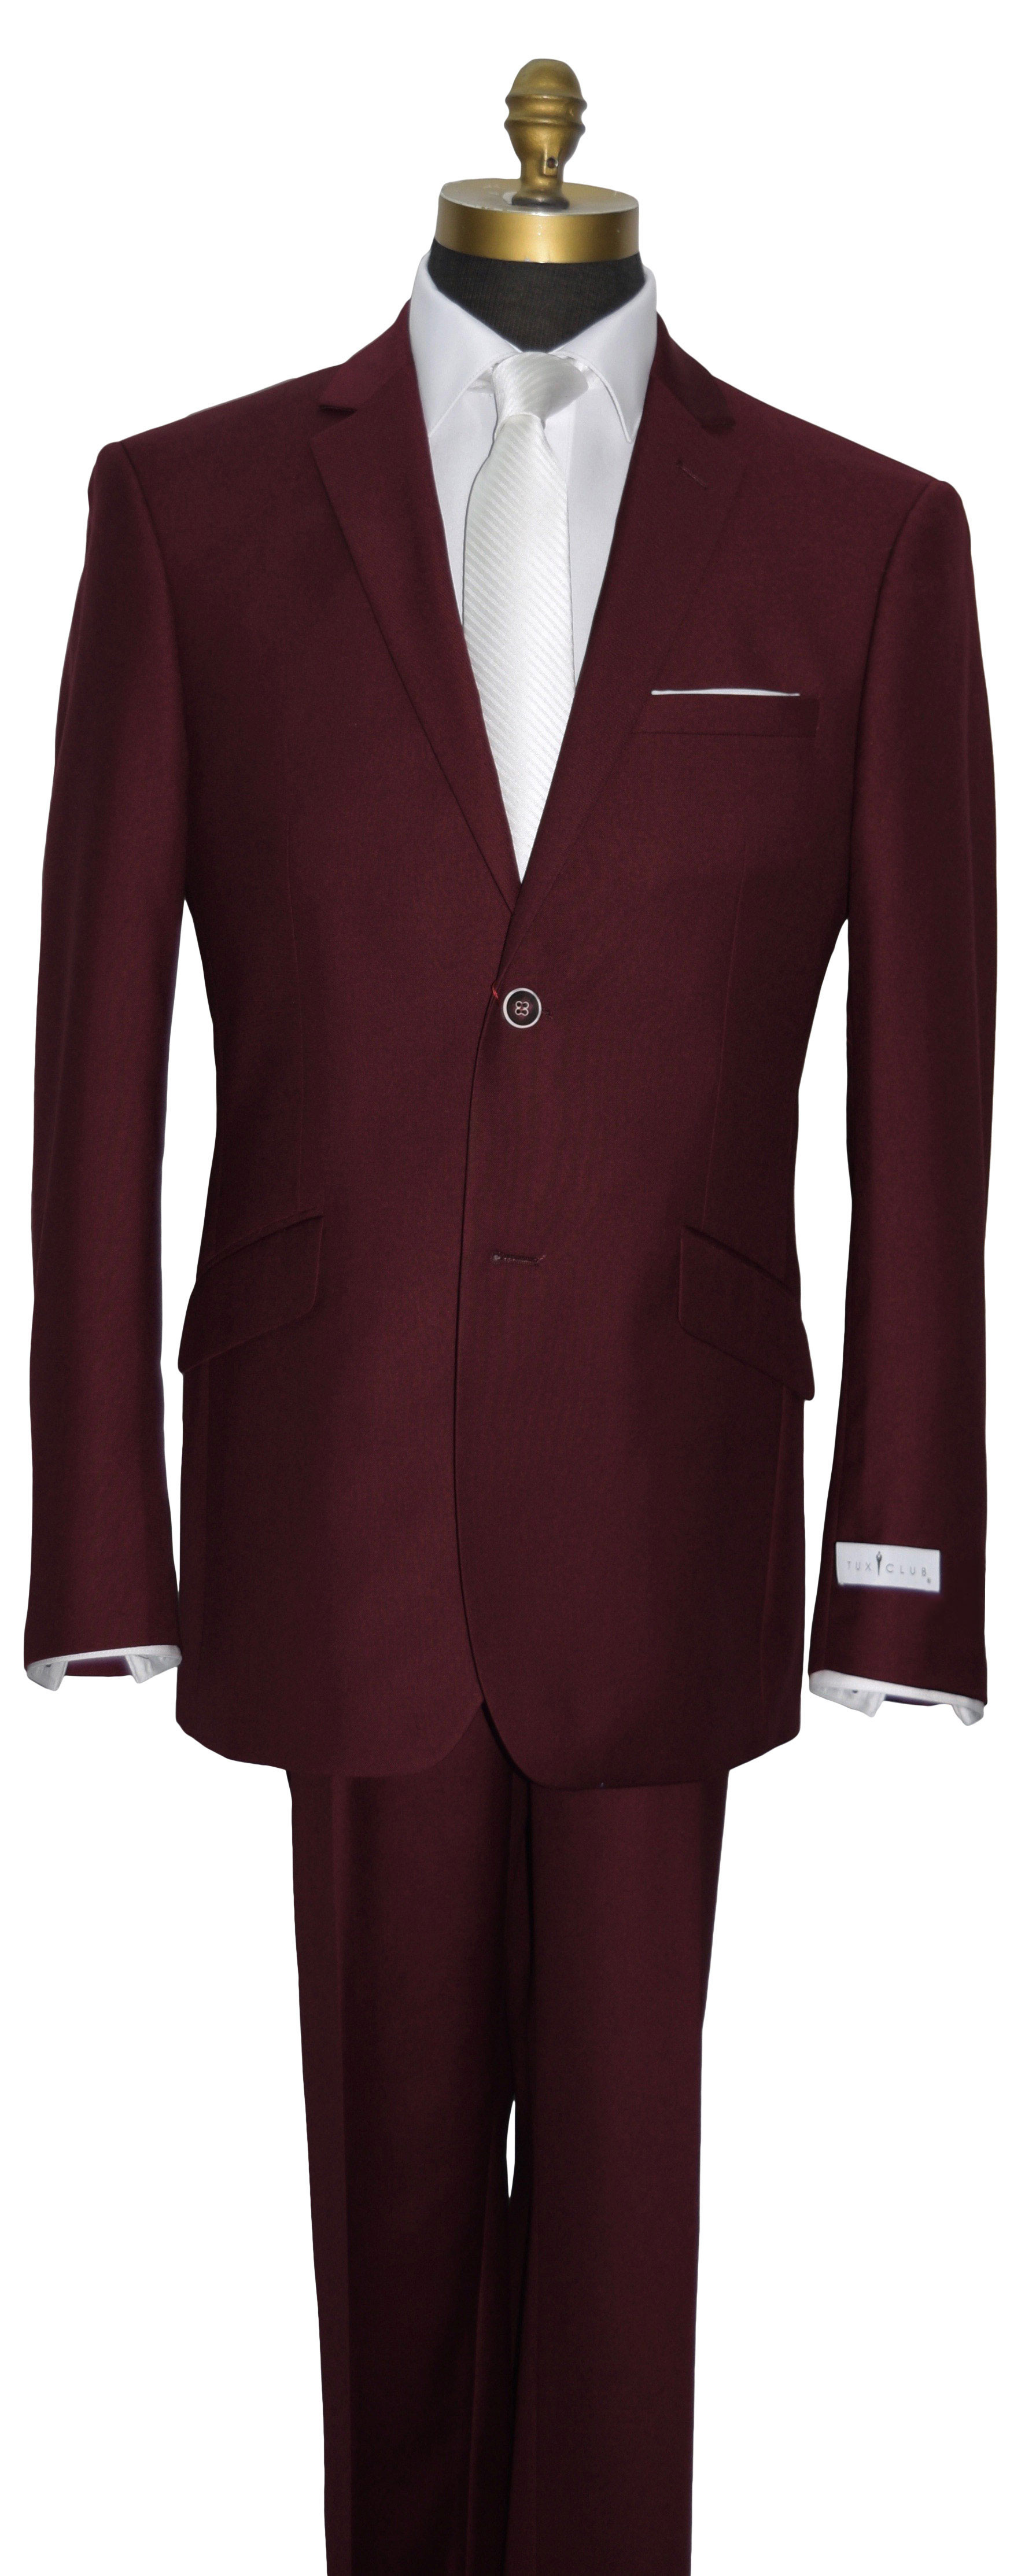 Burgundy Suit Coat and Pants Set